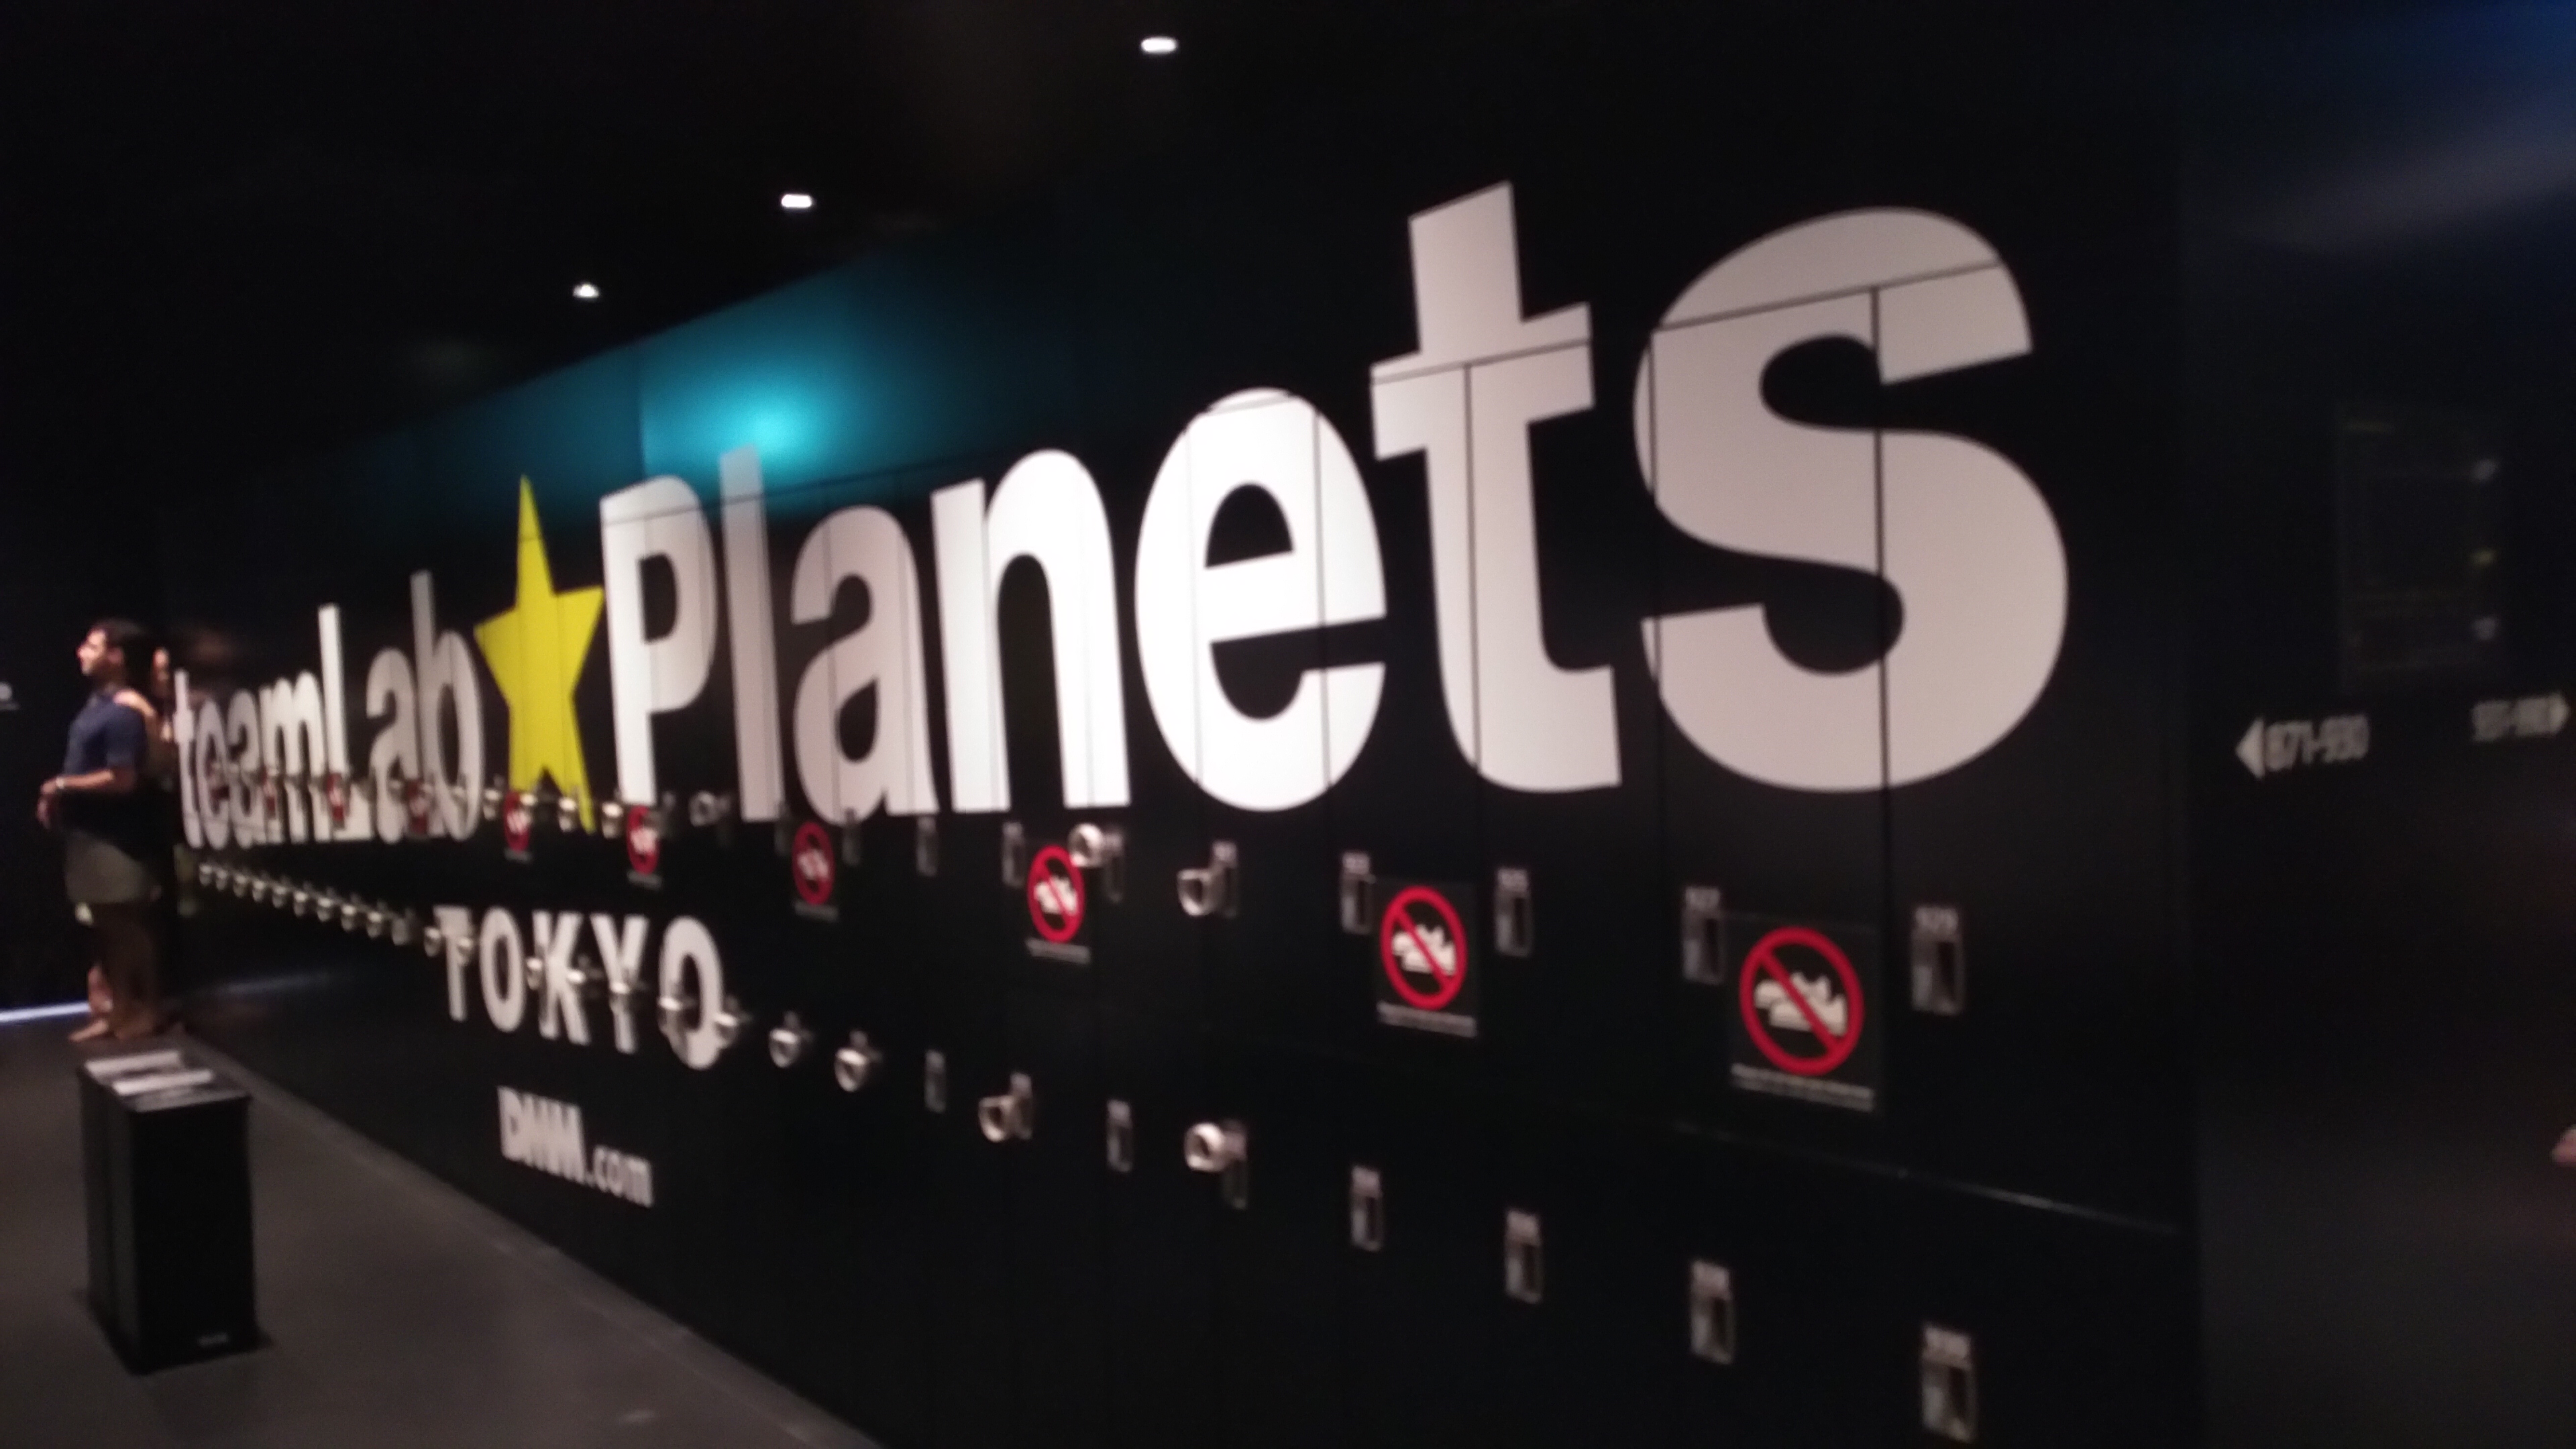 Blick auf schwarze Schließfächer, auf denen der Schriftzug teamLab Planets Tokyo zu lesen ist.